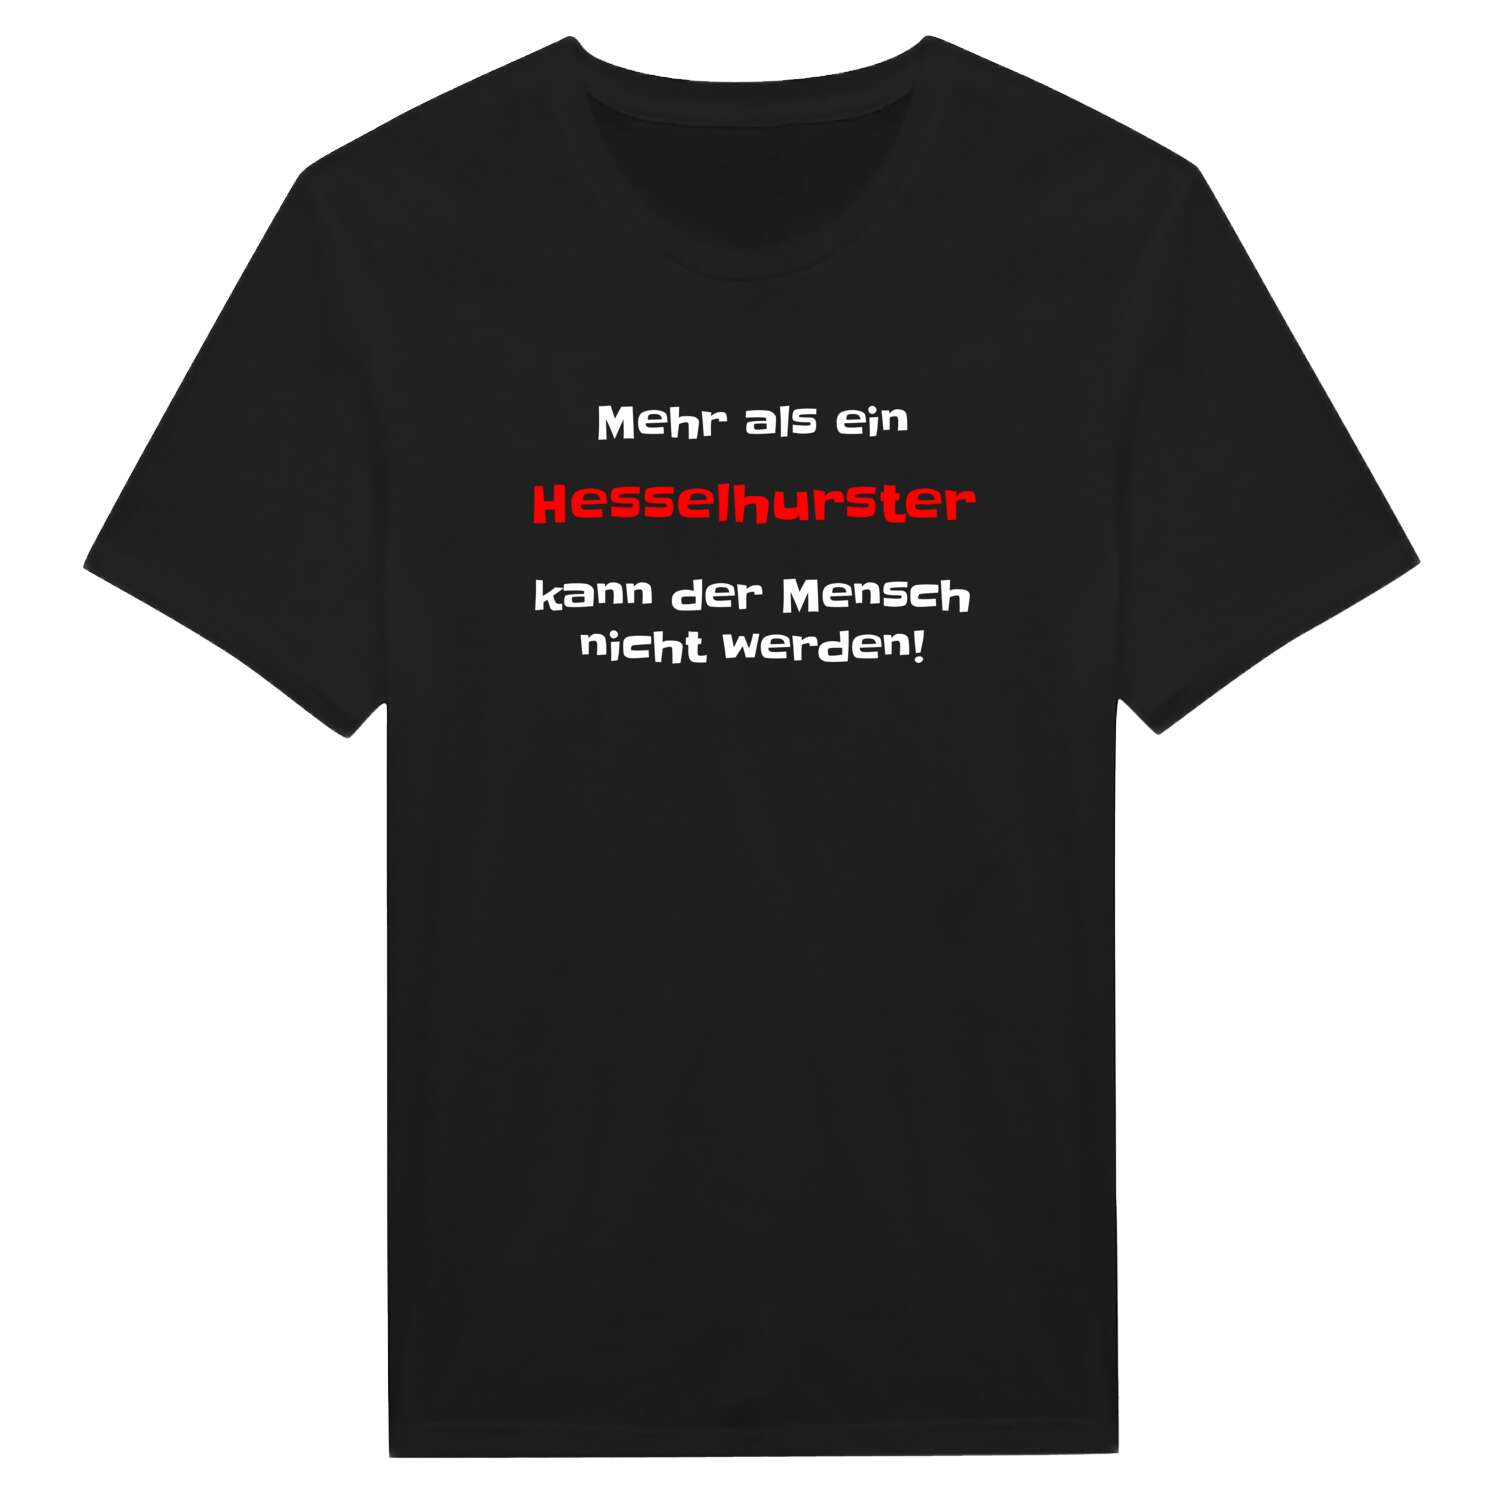 Hesselhurst T-Shirt »Mehr als ein«